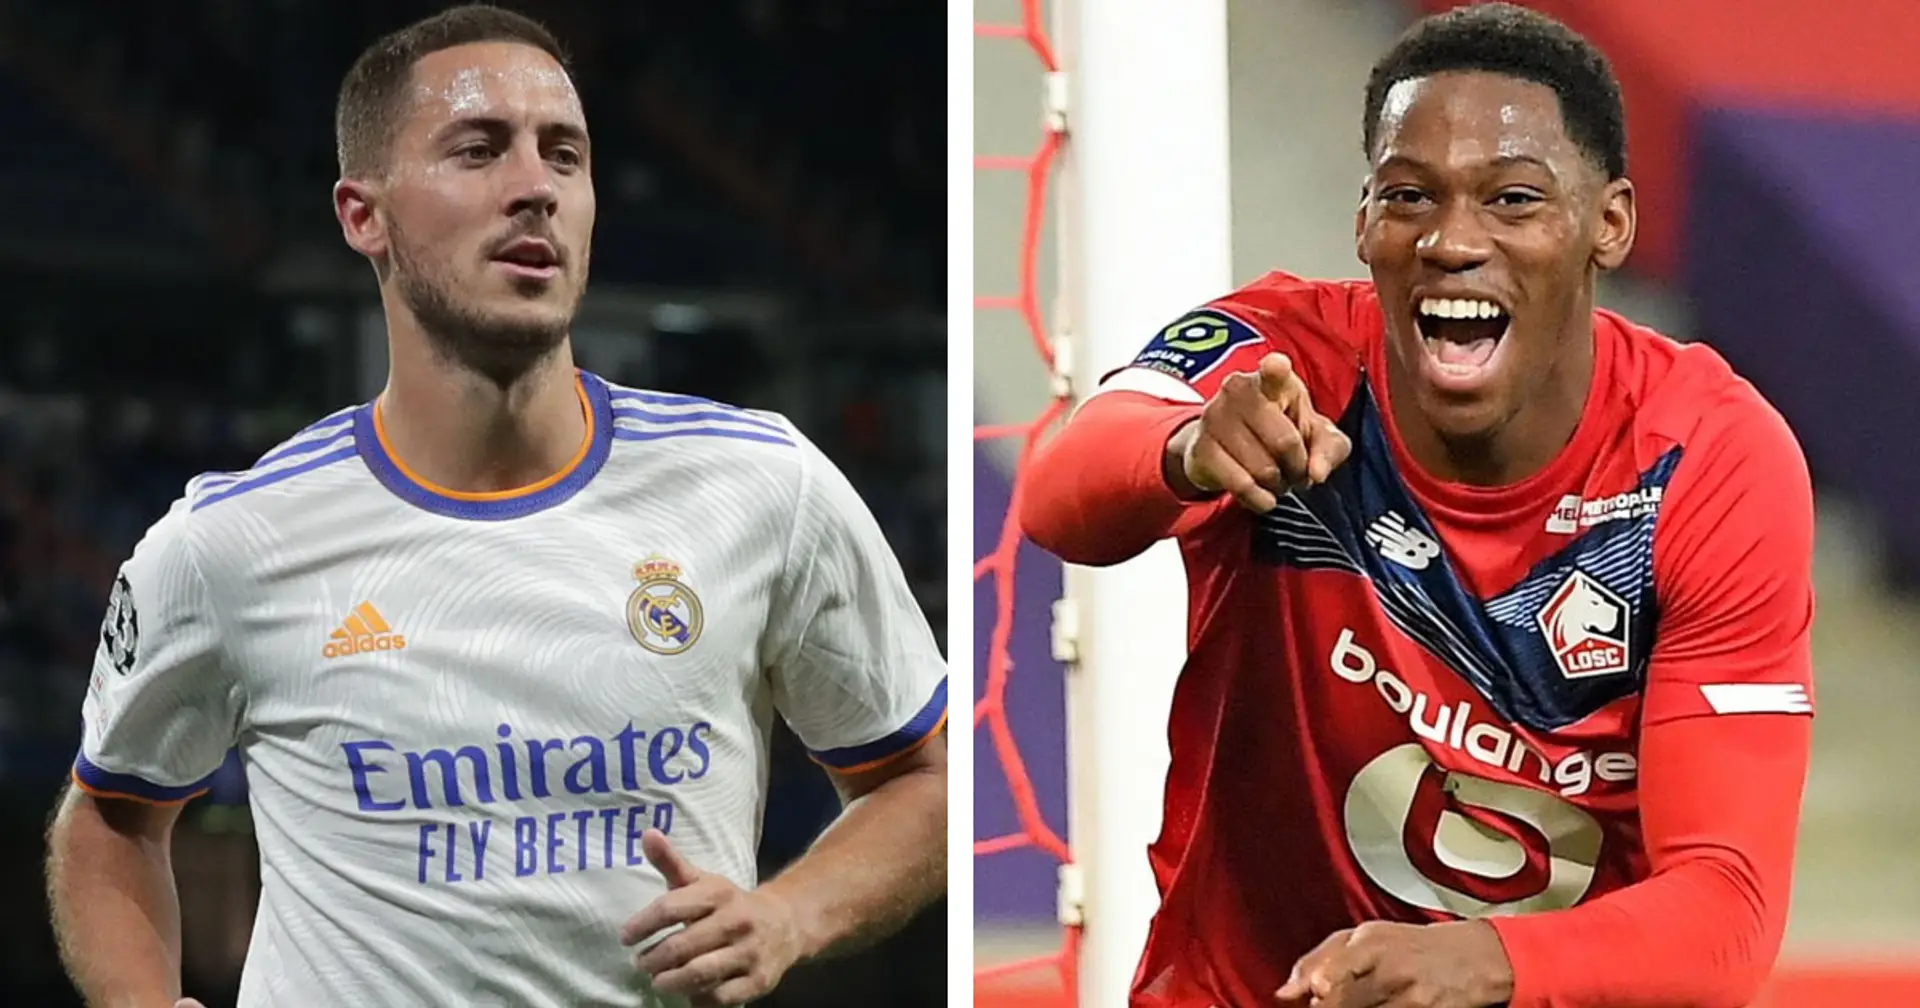 El Madrid podría incluir a Hazard en una operación para fichar a Jonathan David, delantero del Lille (fiabilidad: 4 estrellas)